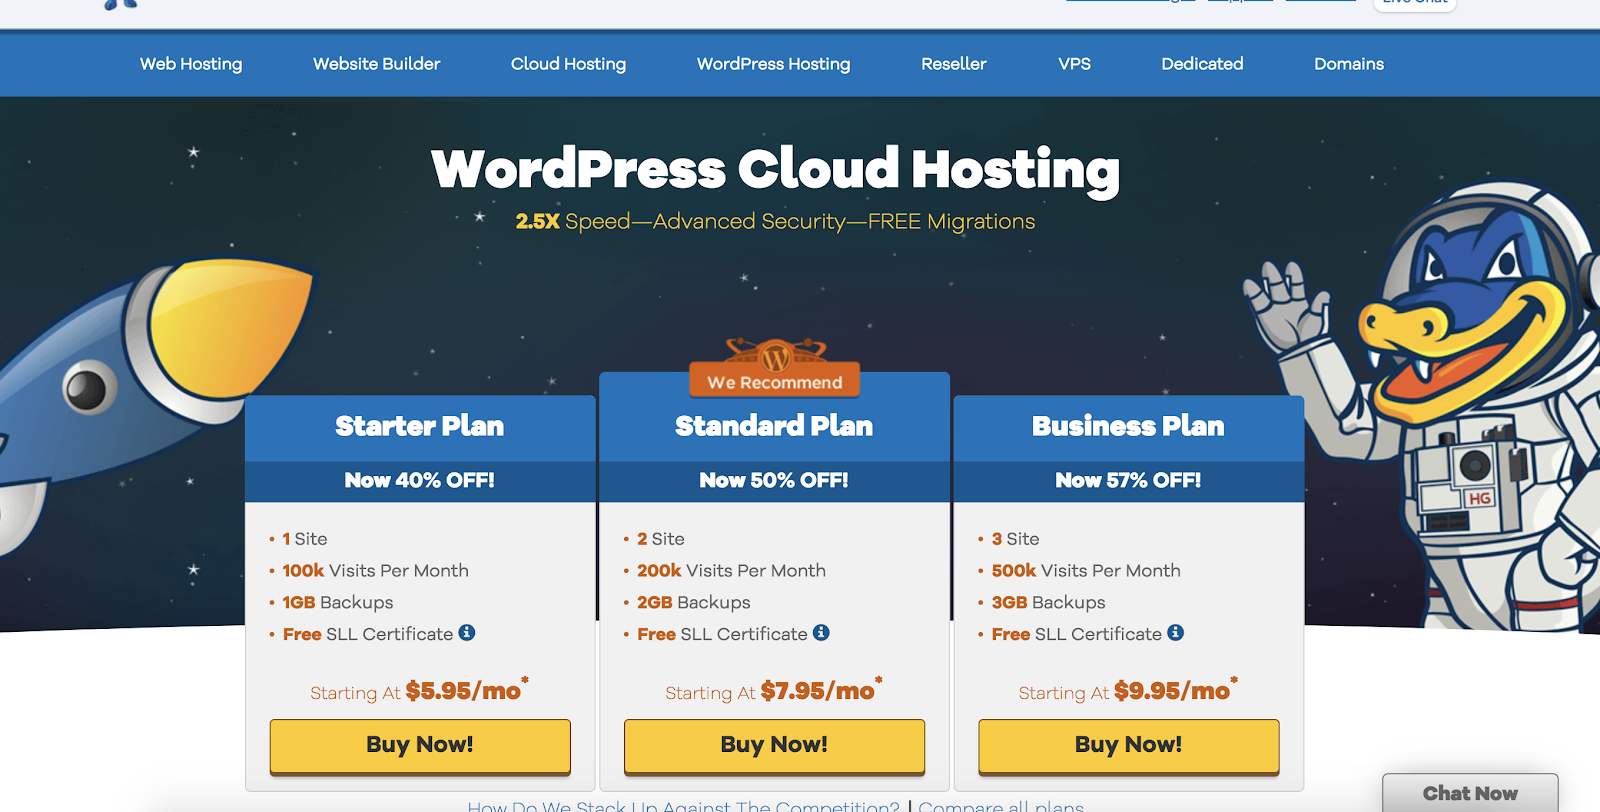 hostgator-wordpress-hosting